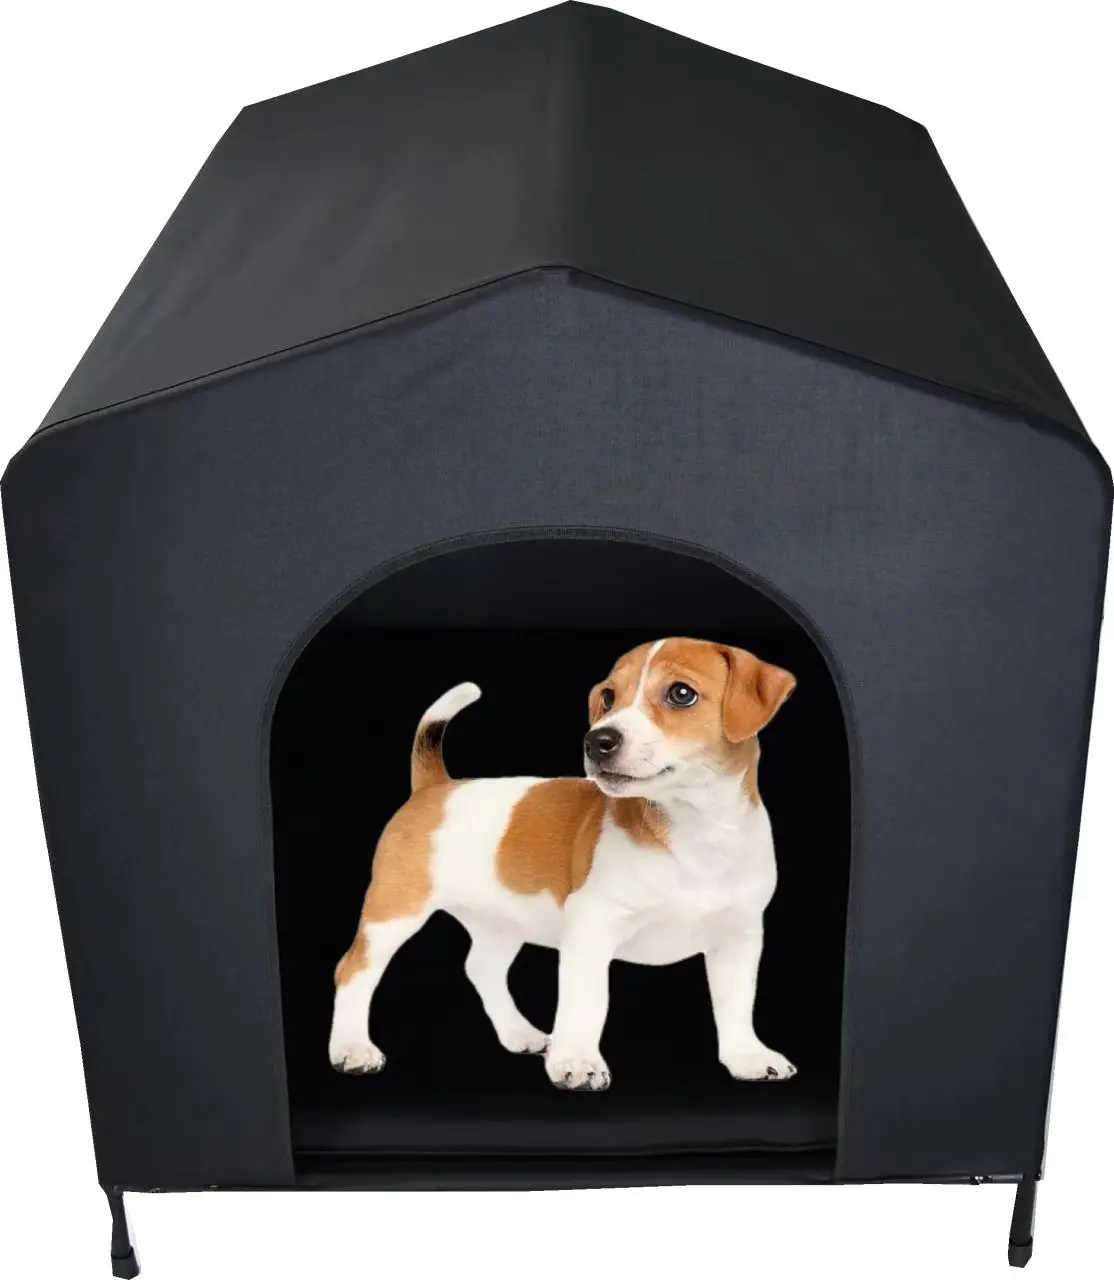 あらゆる種類の猫と犬の屋内屋外使用のための4つのサイズの上げられた犬のベッドの外のトップセラーの犬小屋